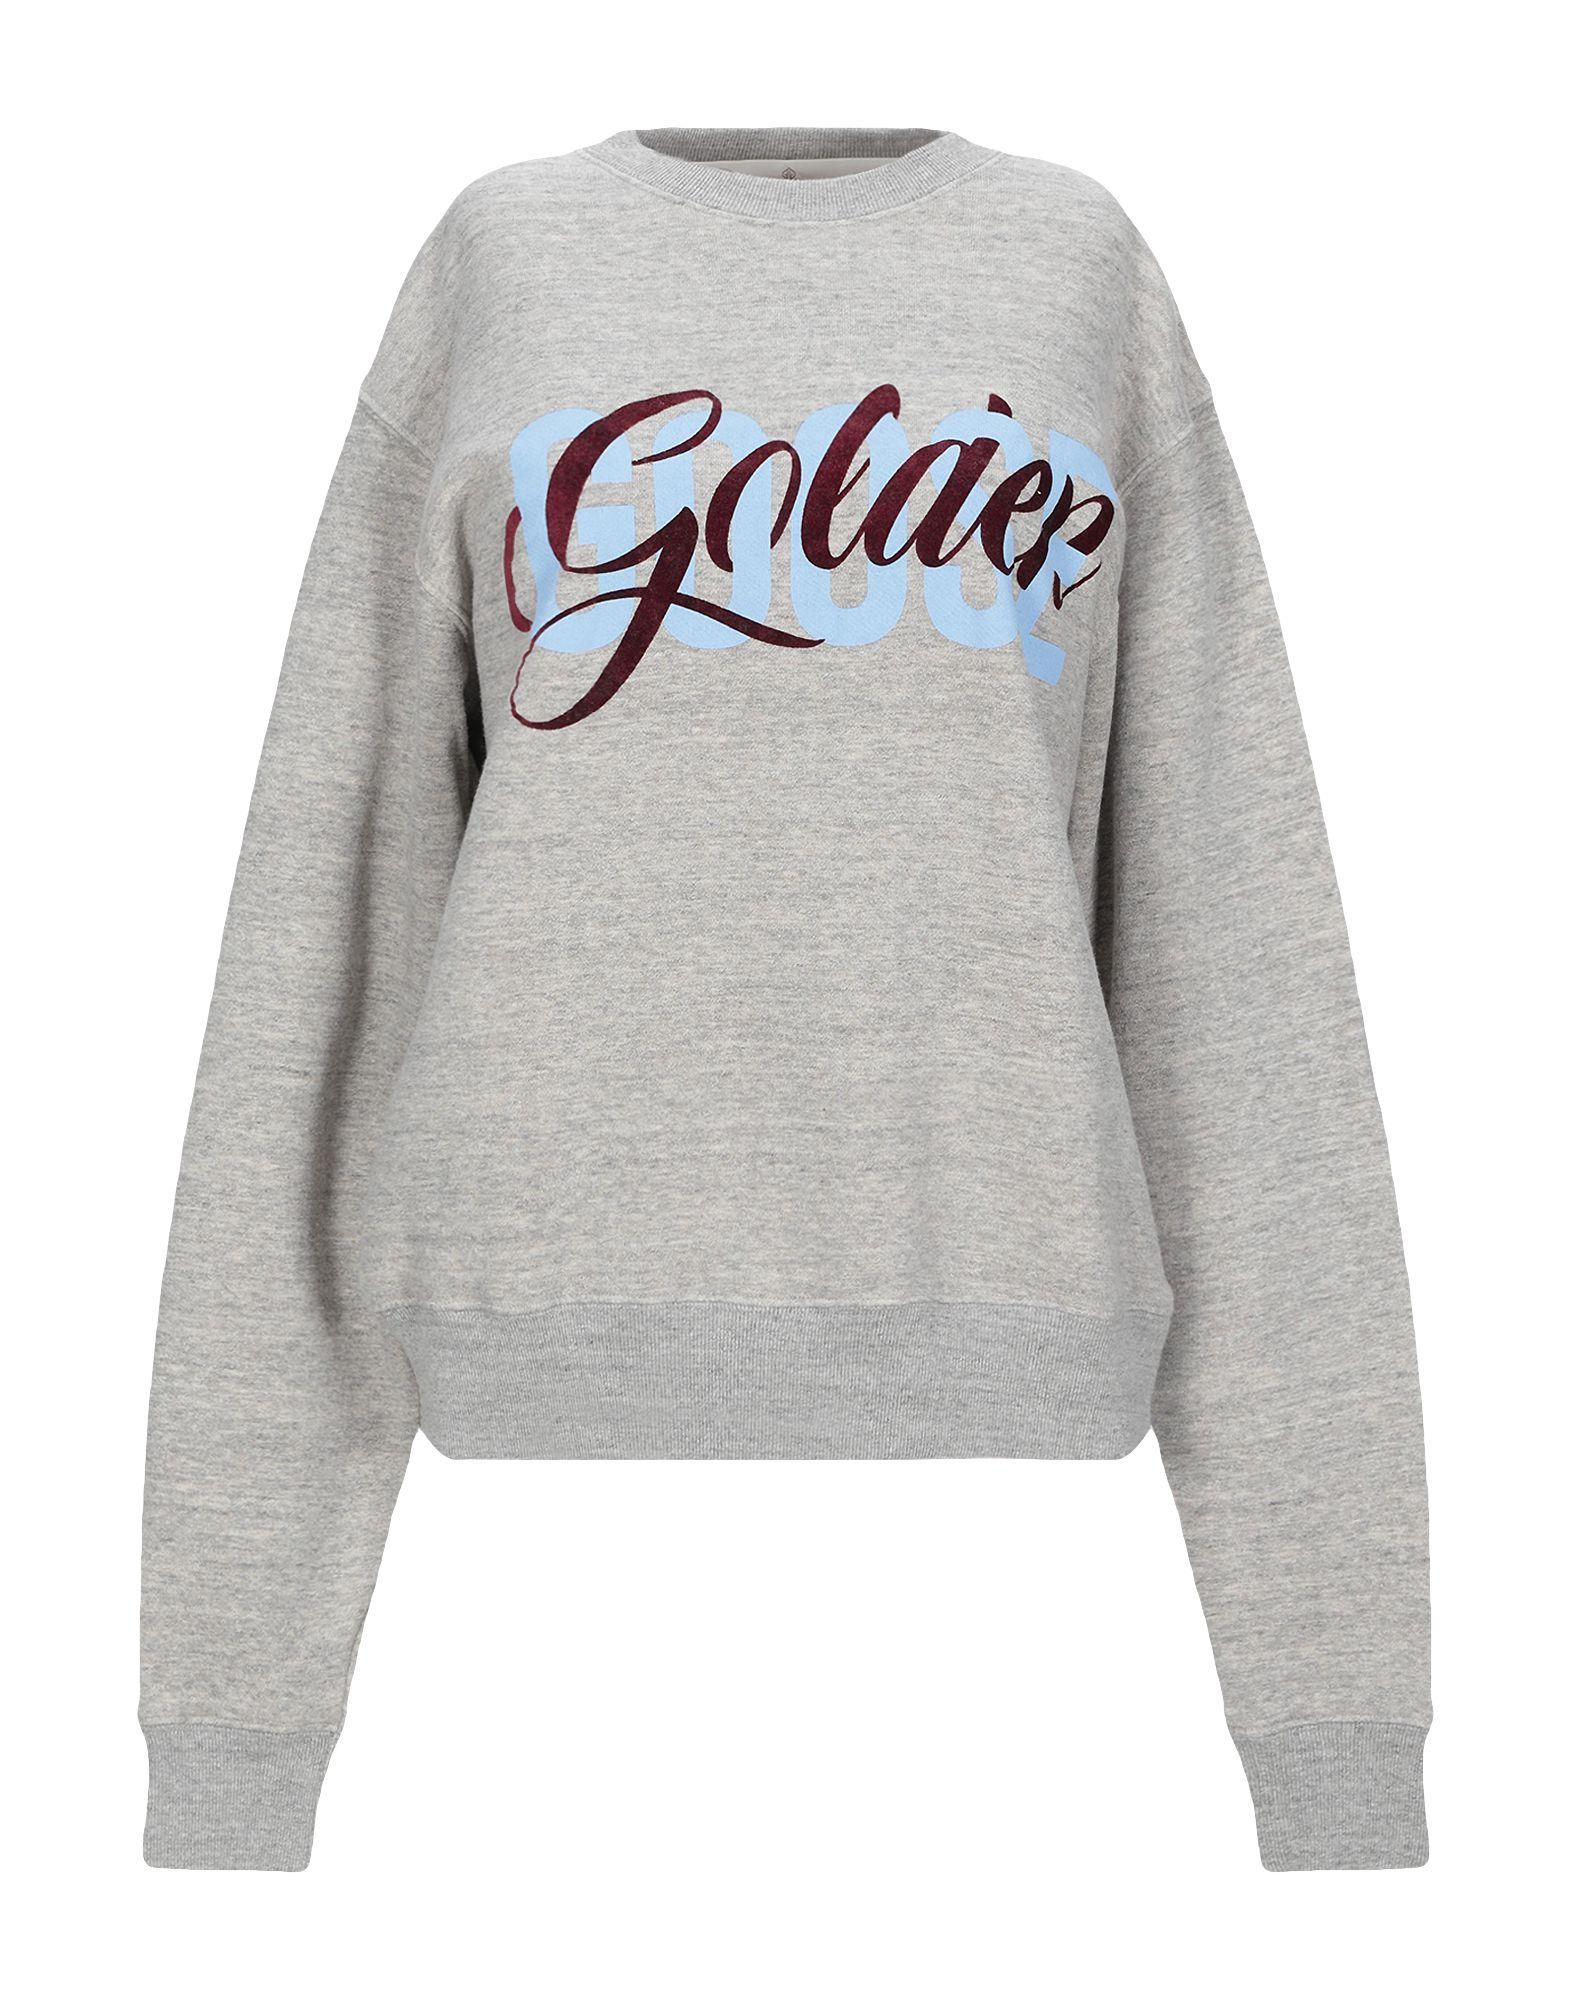 Golden Goose Deluxe Brand Cotton Sweatshirt in Light Grey (Gray) - Lyst